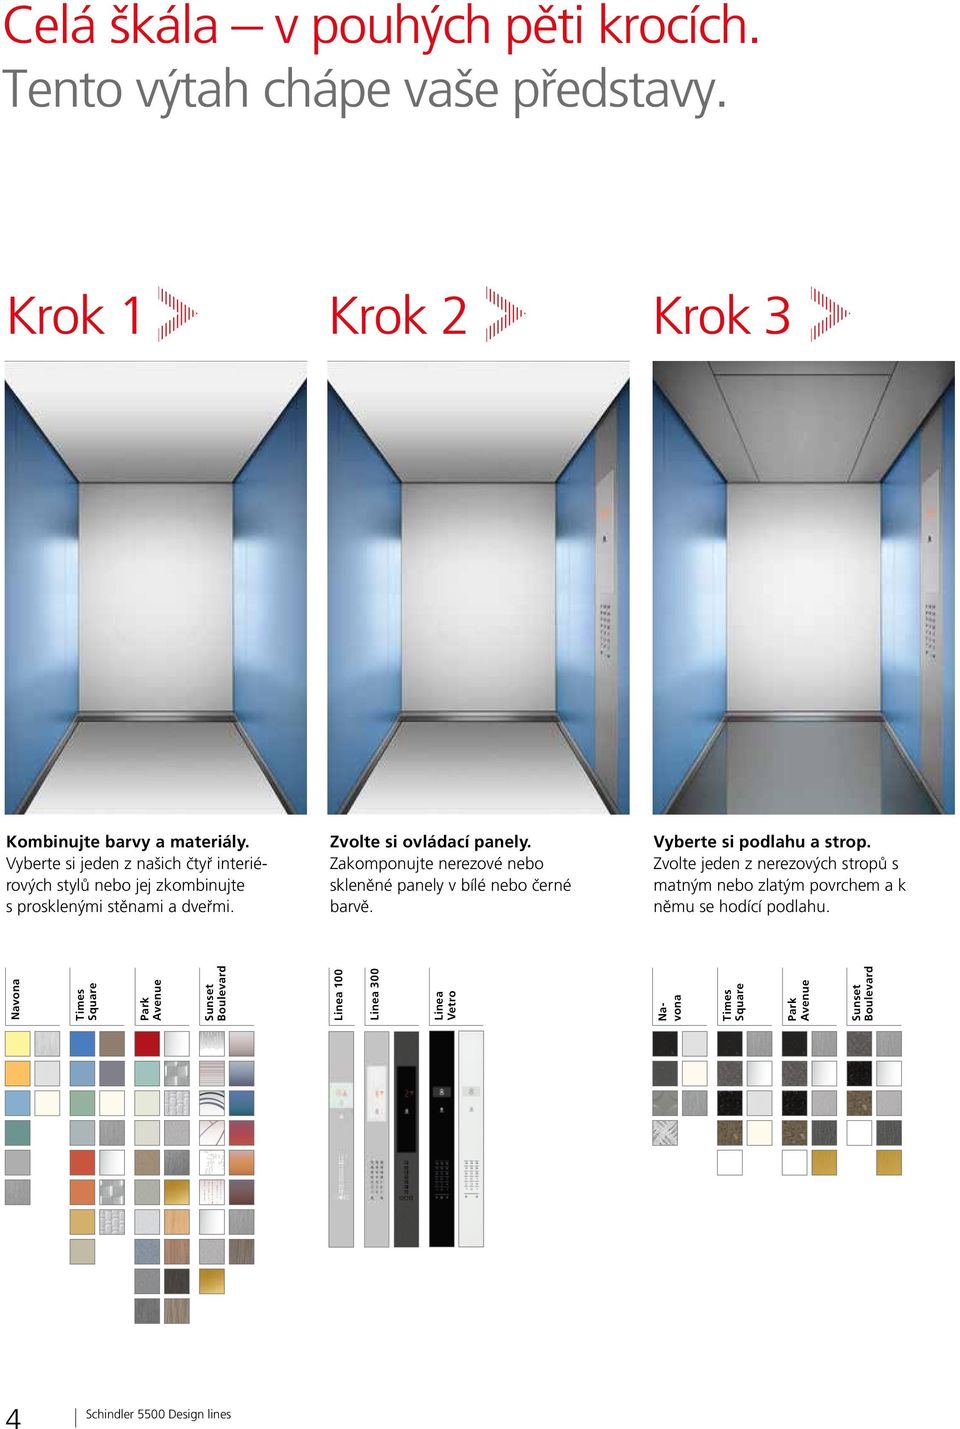 Zakomponujte nerezové nebo skleněné panely v bílé nebo černé barvě. Vyberte si podlahu a strop.